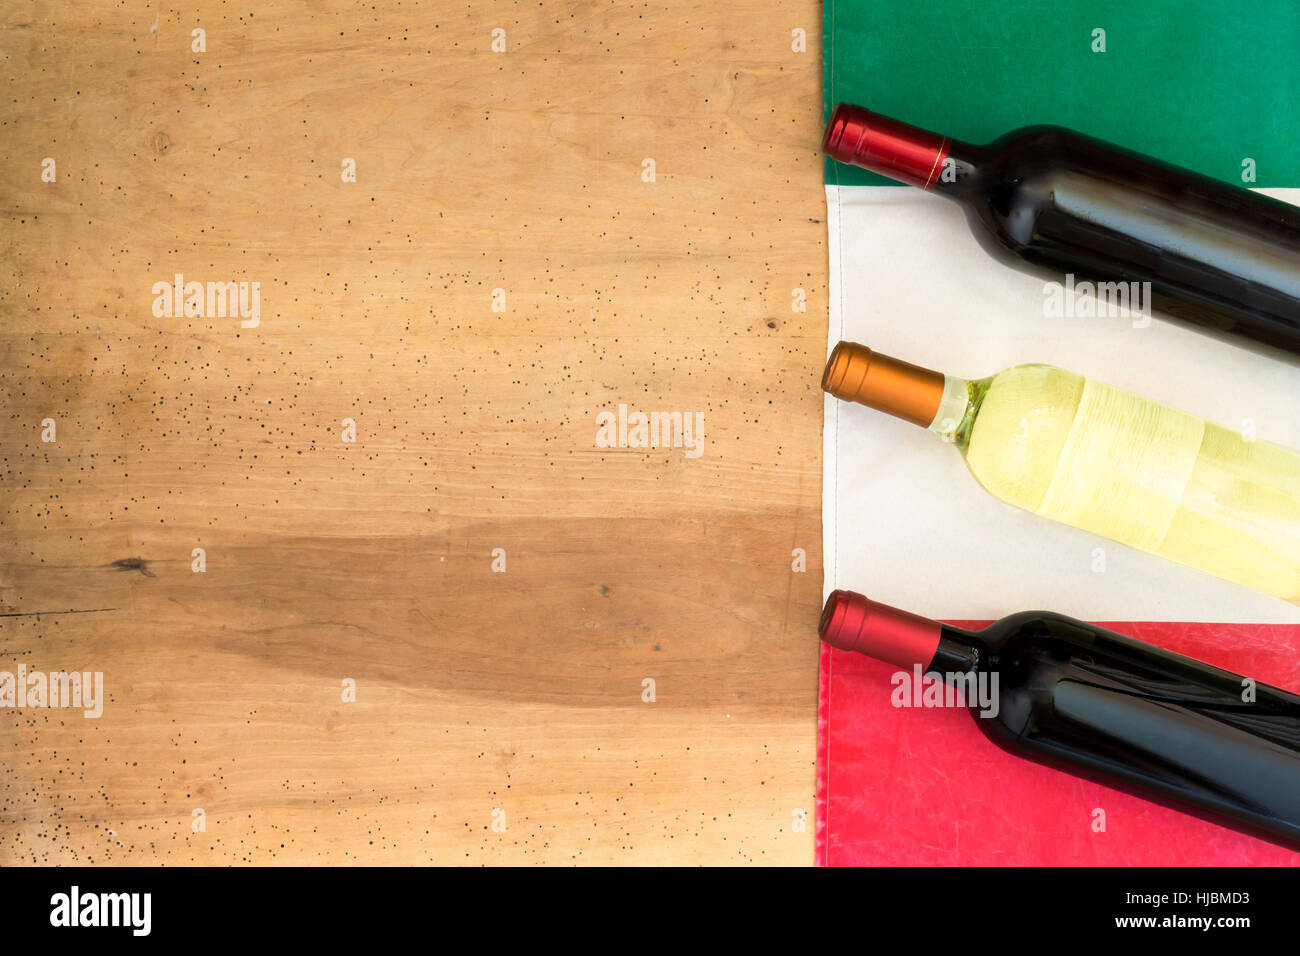 Italian wine bottles on wooden background Stock Photo